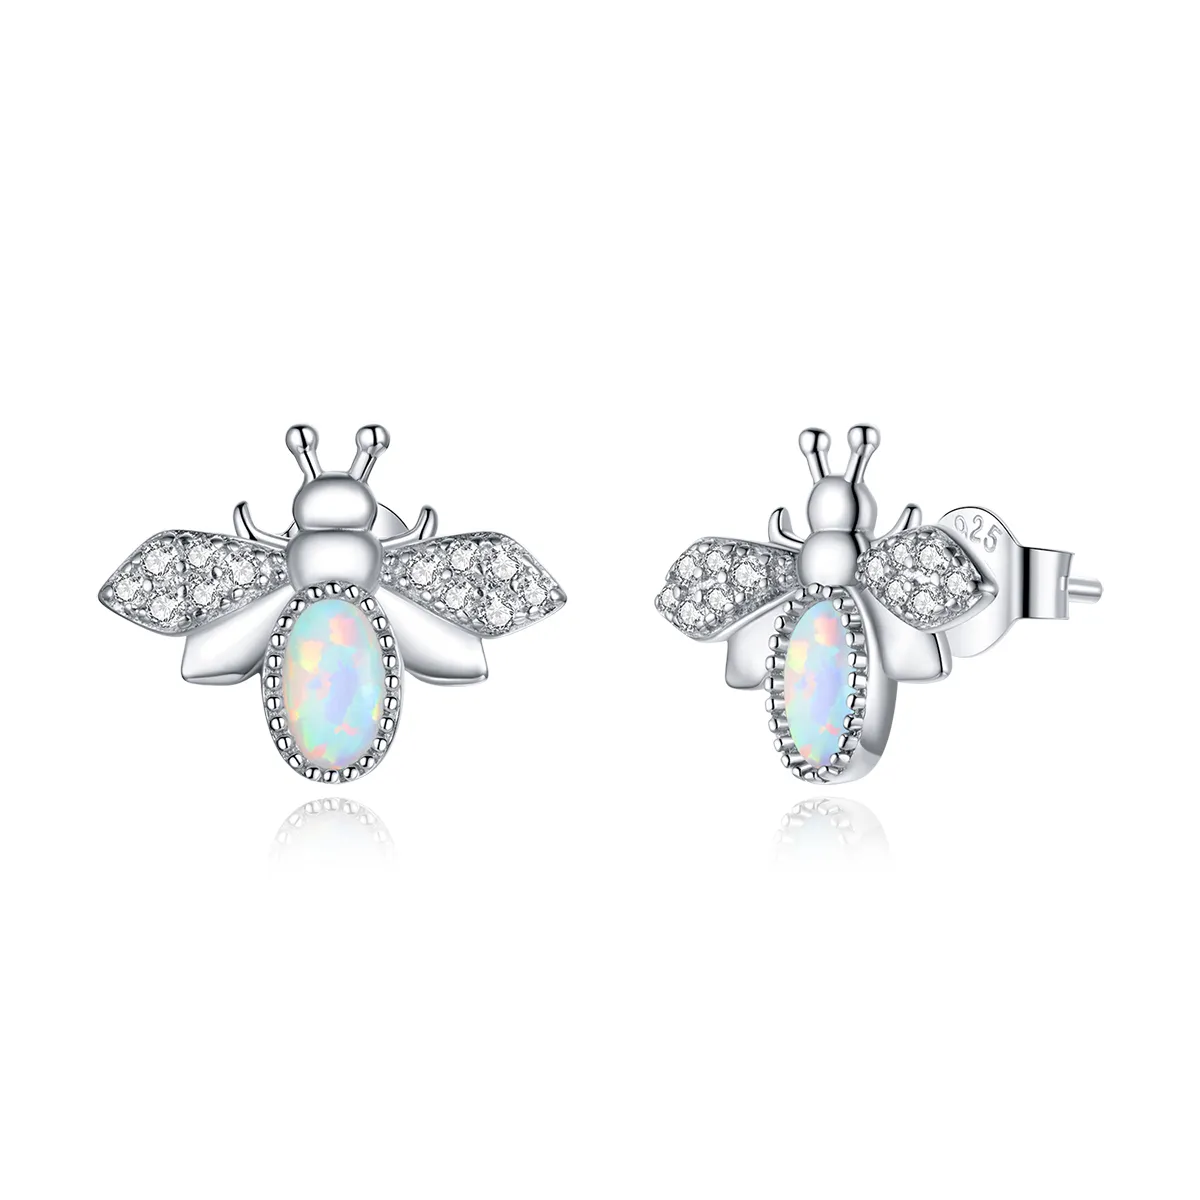 Pandora Style Silver Bee Stud Earrings - SCE1021